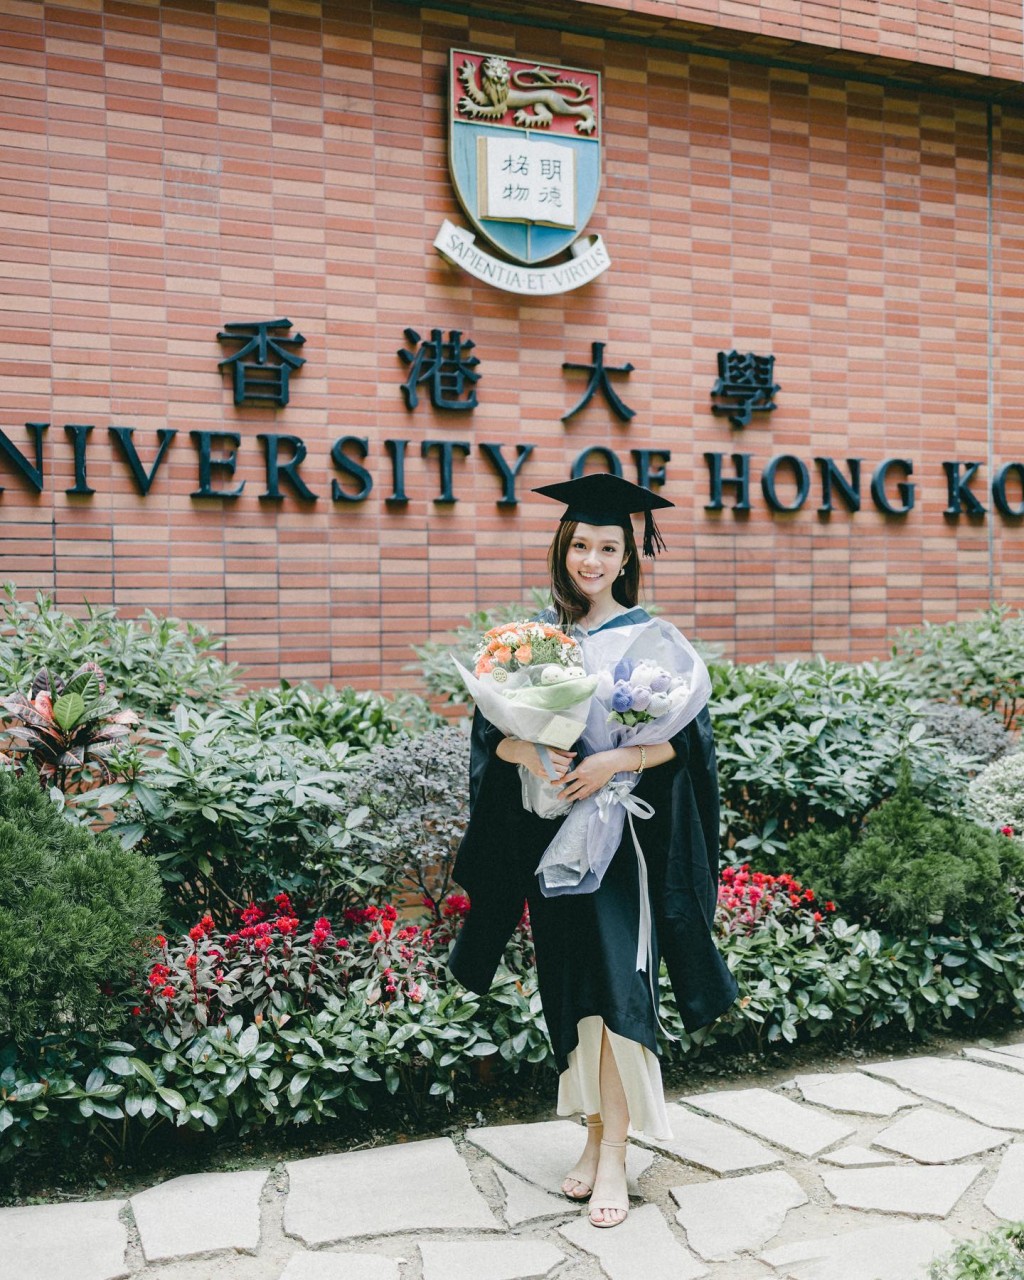 加入TVB後仍邊拍劇邊讚書，繼續在香港大學修讀建築碩士課程，於2021年宣佈畢業。 ​  ​